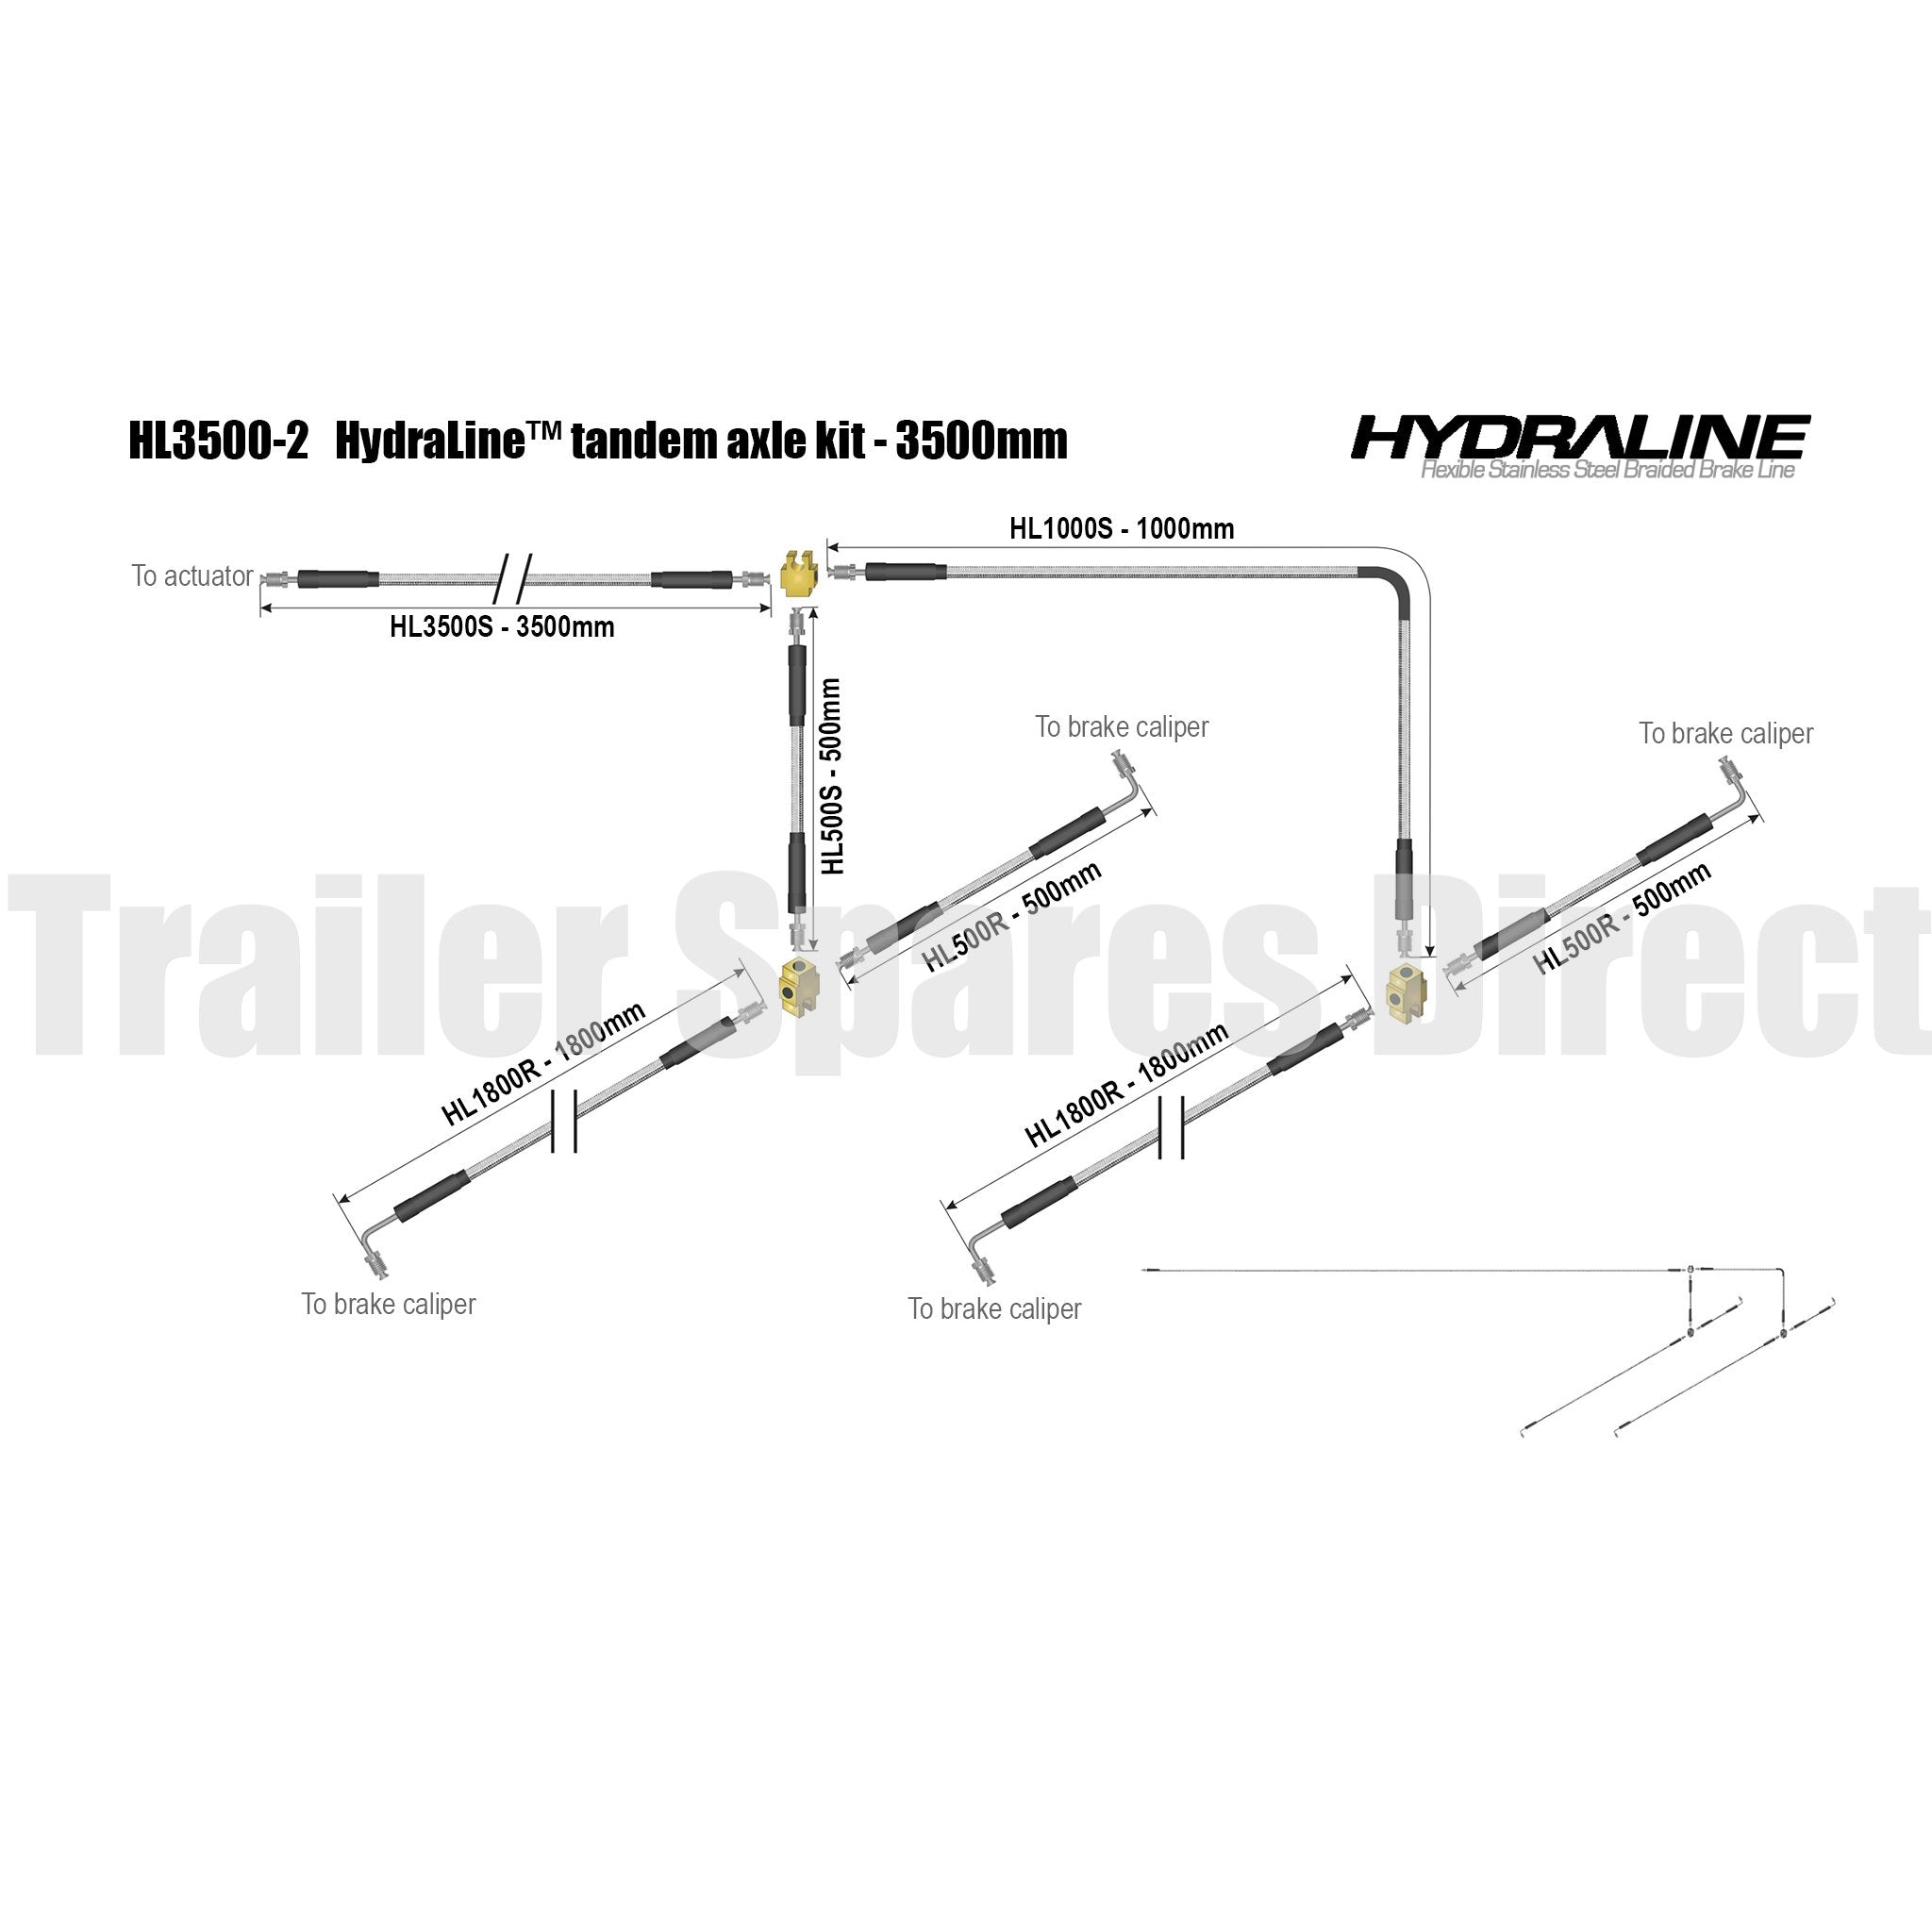 Hydraline kit 3500mm tandem axle diagram